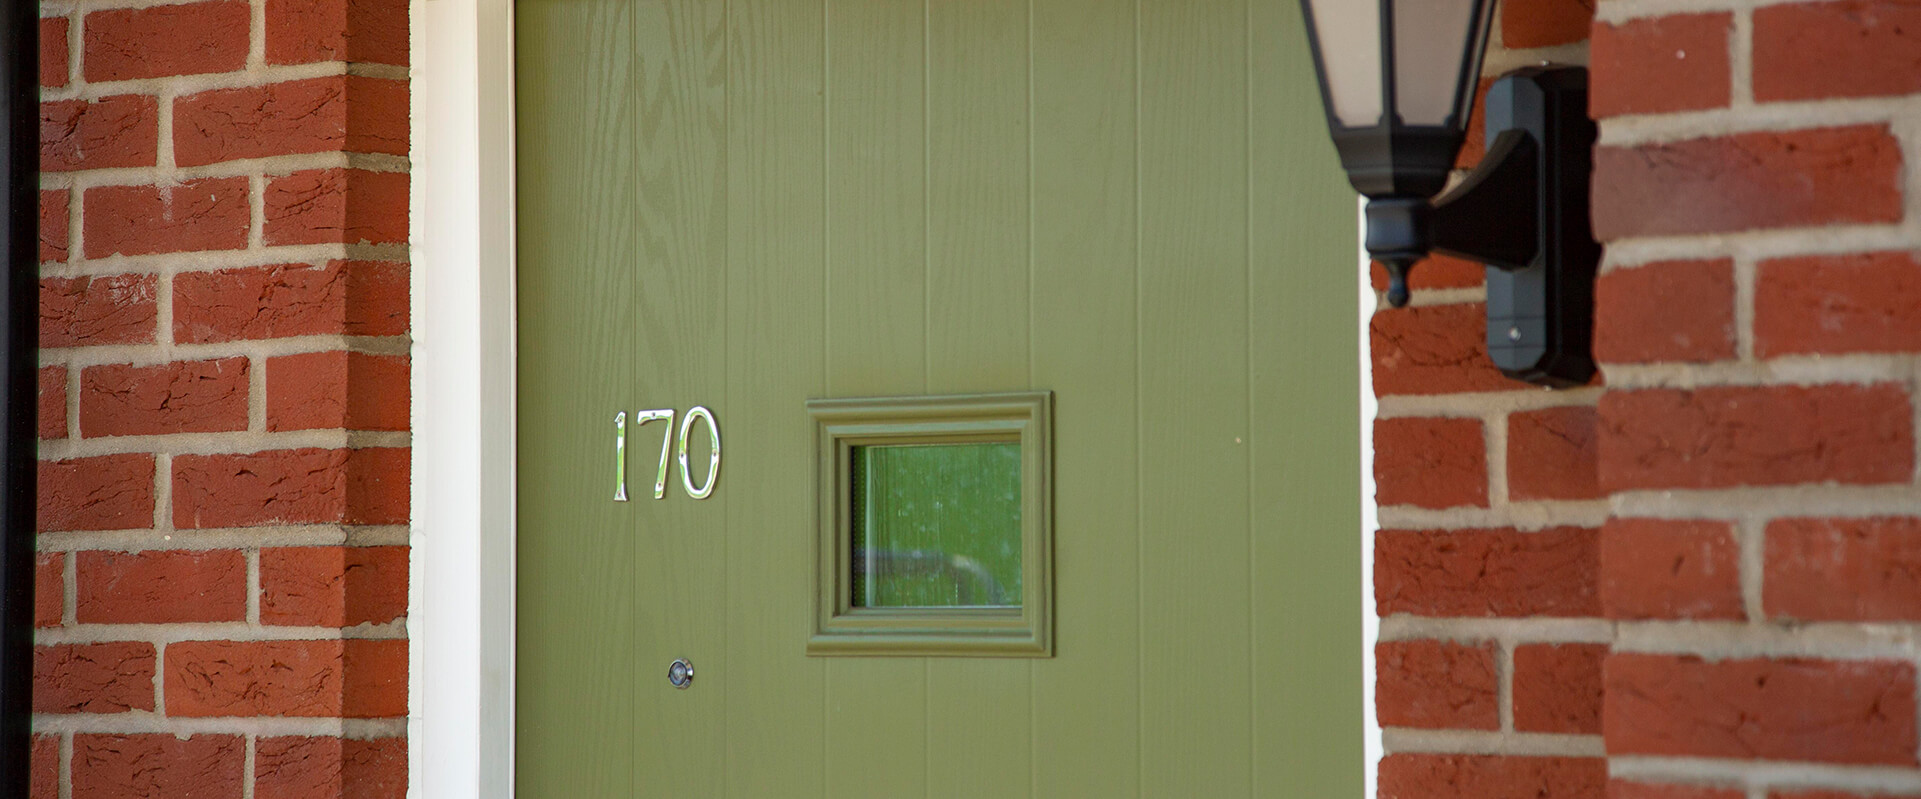 A green front door